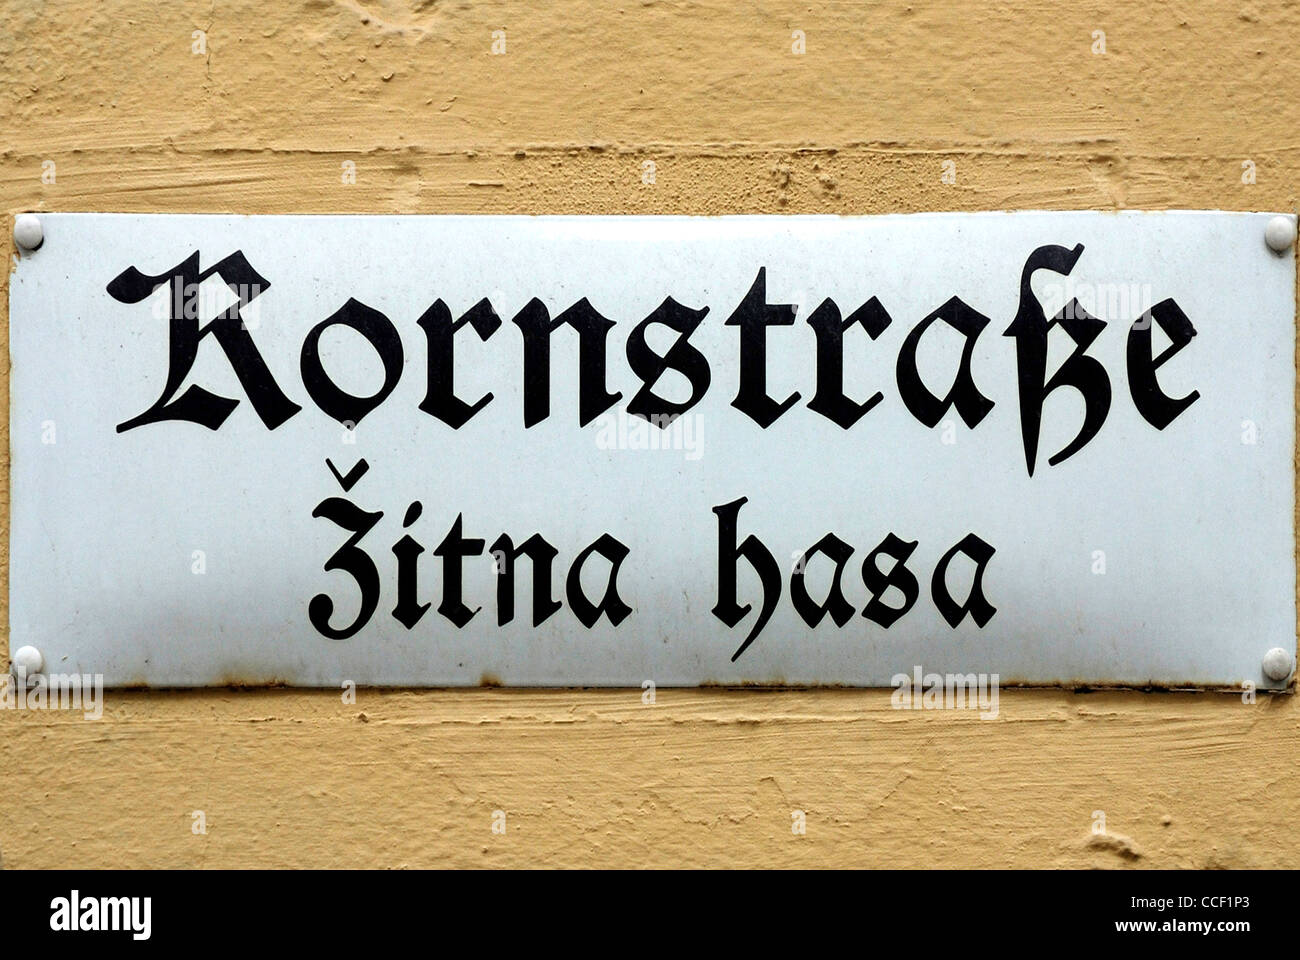 Calle signo de Bautzen en alemán y en el idioma sorabo Kornstrasse - Zitna hasa. Foto de stock